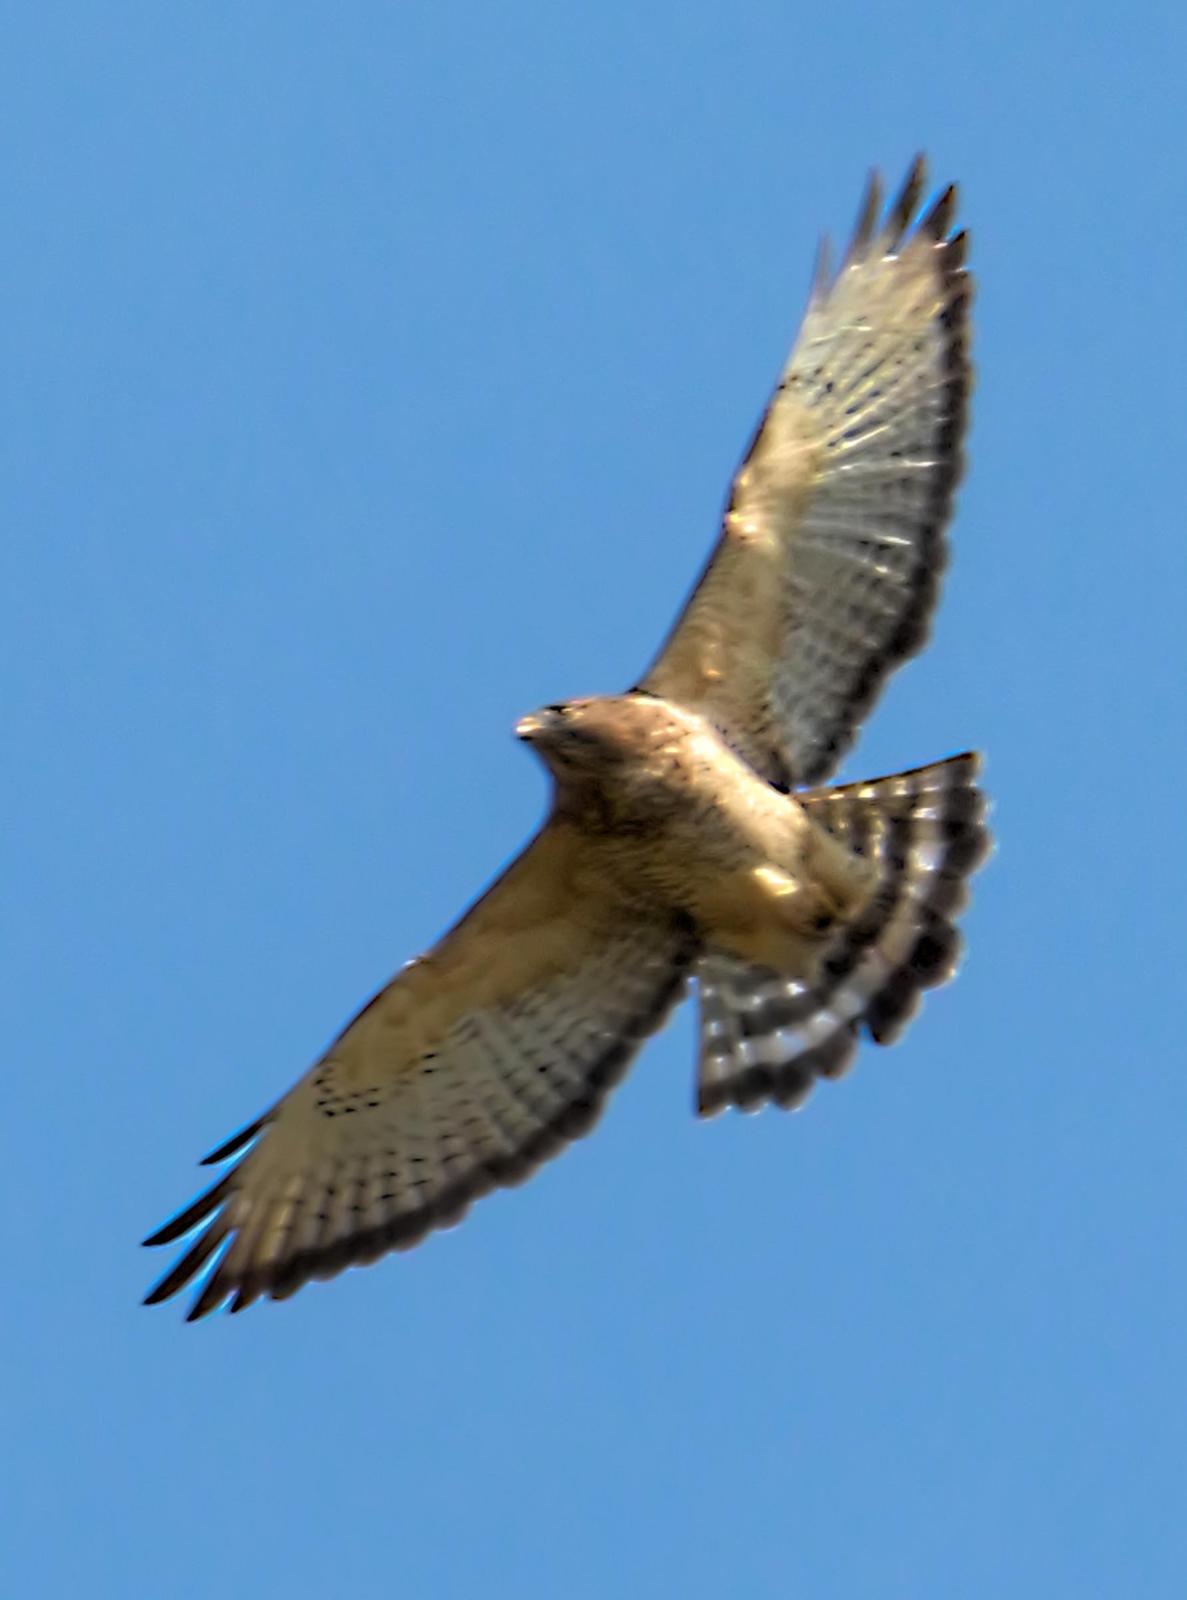 Broad-winged Hawk Photo by Dan Tallman